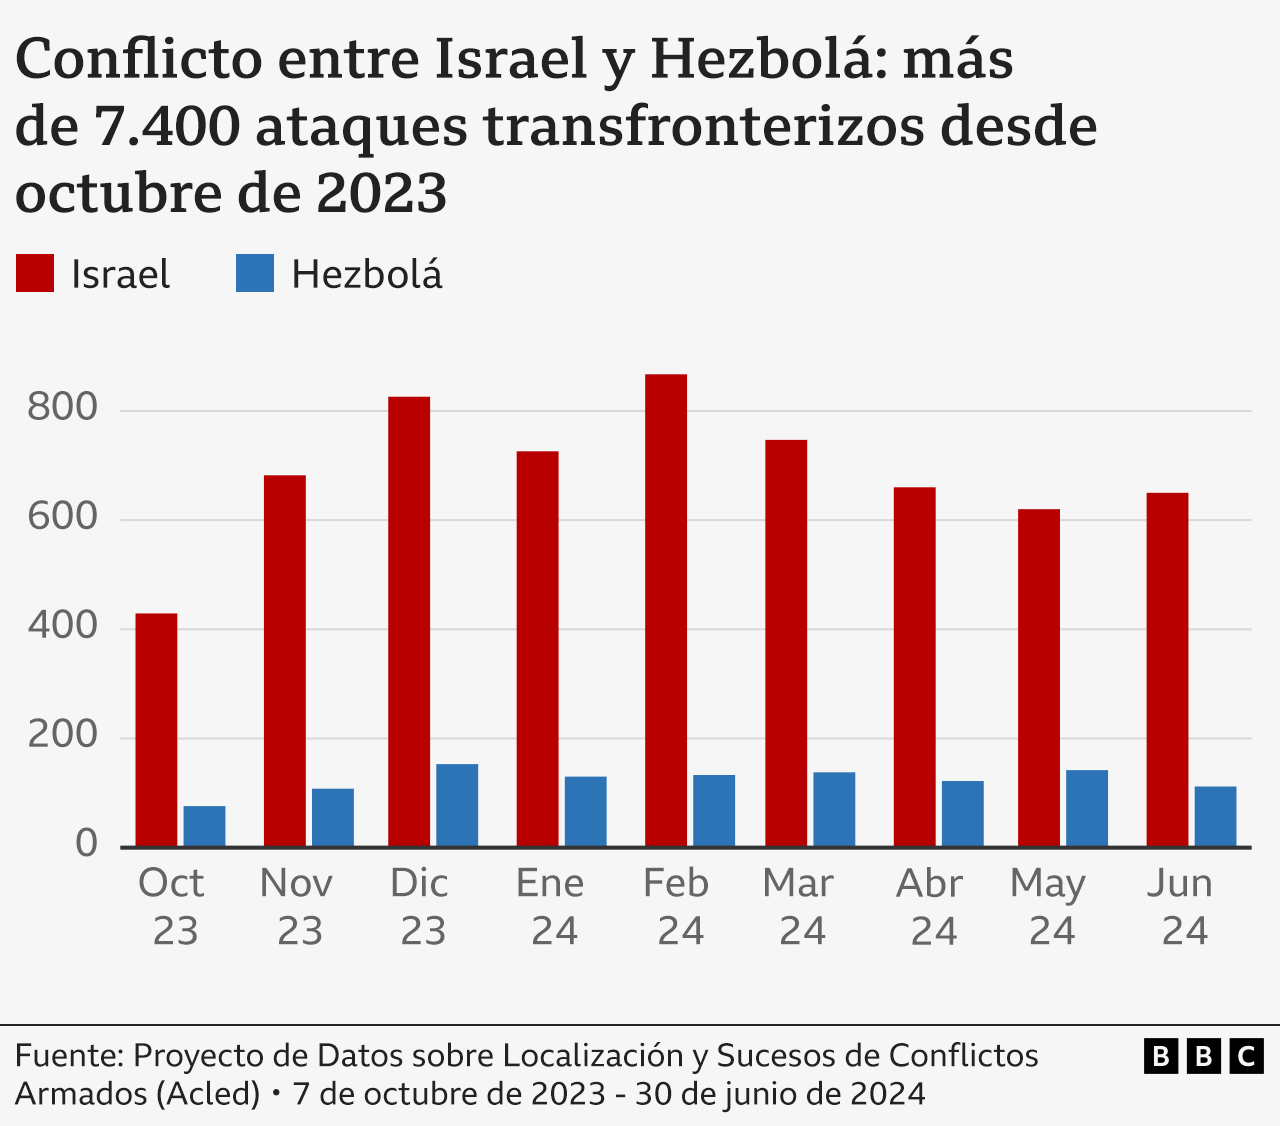 Gráfico sobre el número de ataques entre Israel y Hezbolá.